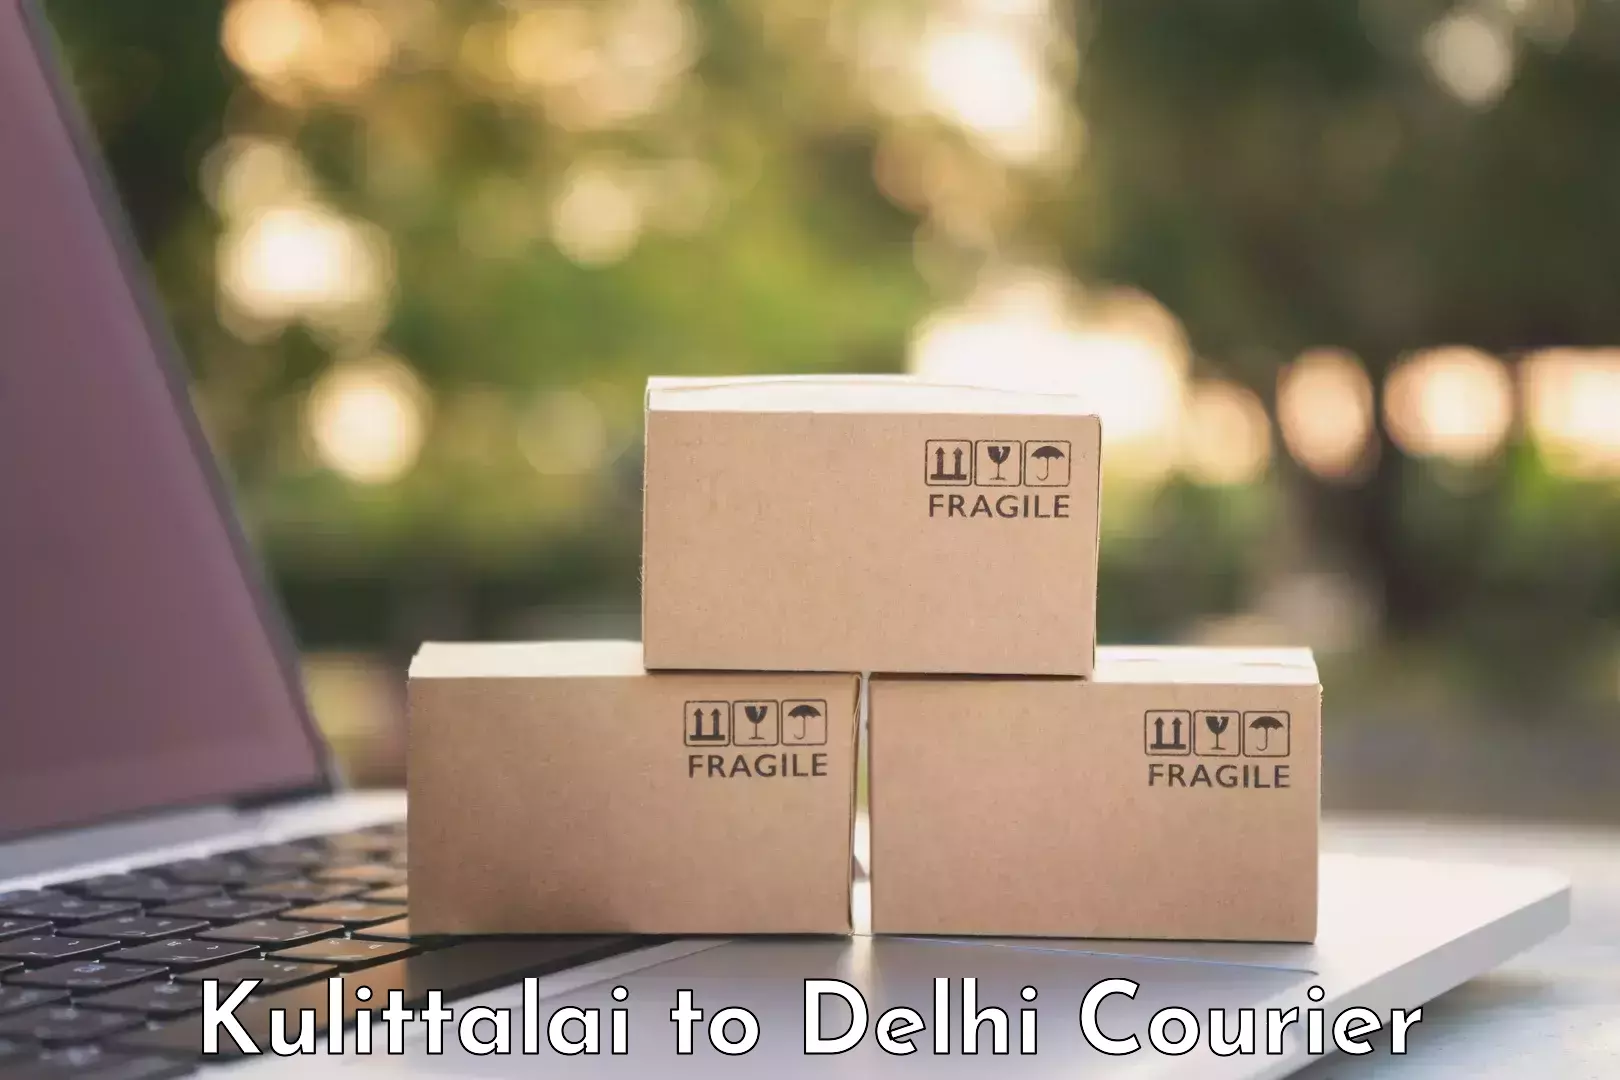 Door-to-door baggage service Kulittalai to NIT Delhi